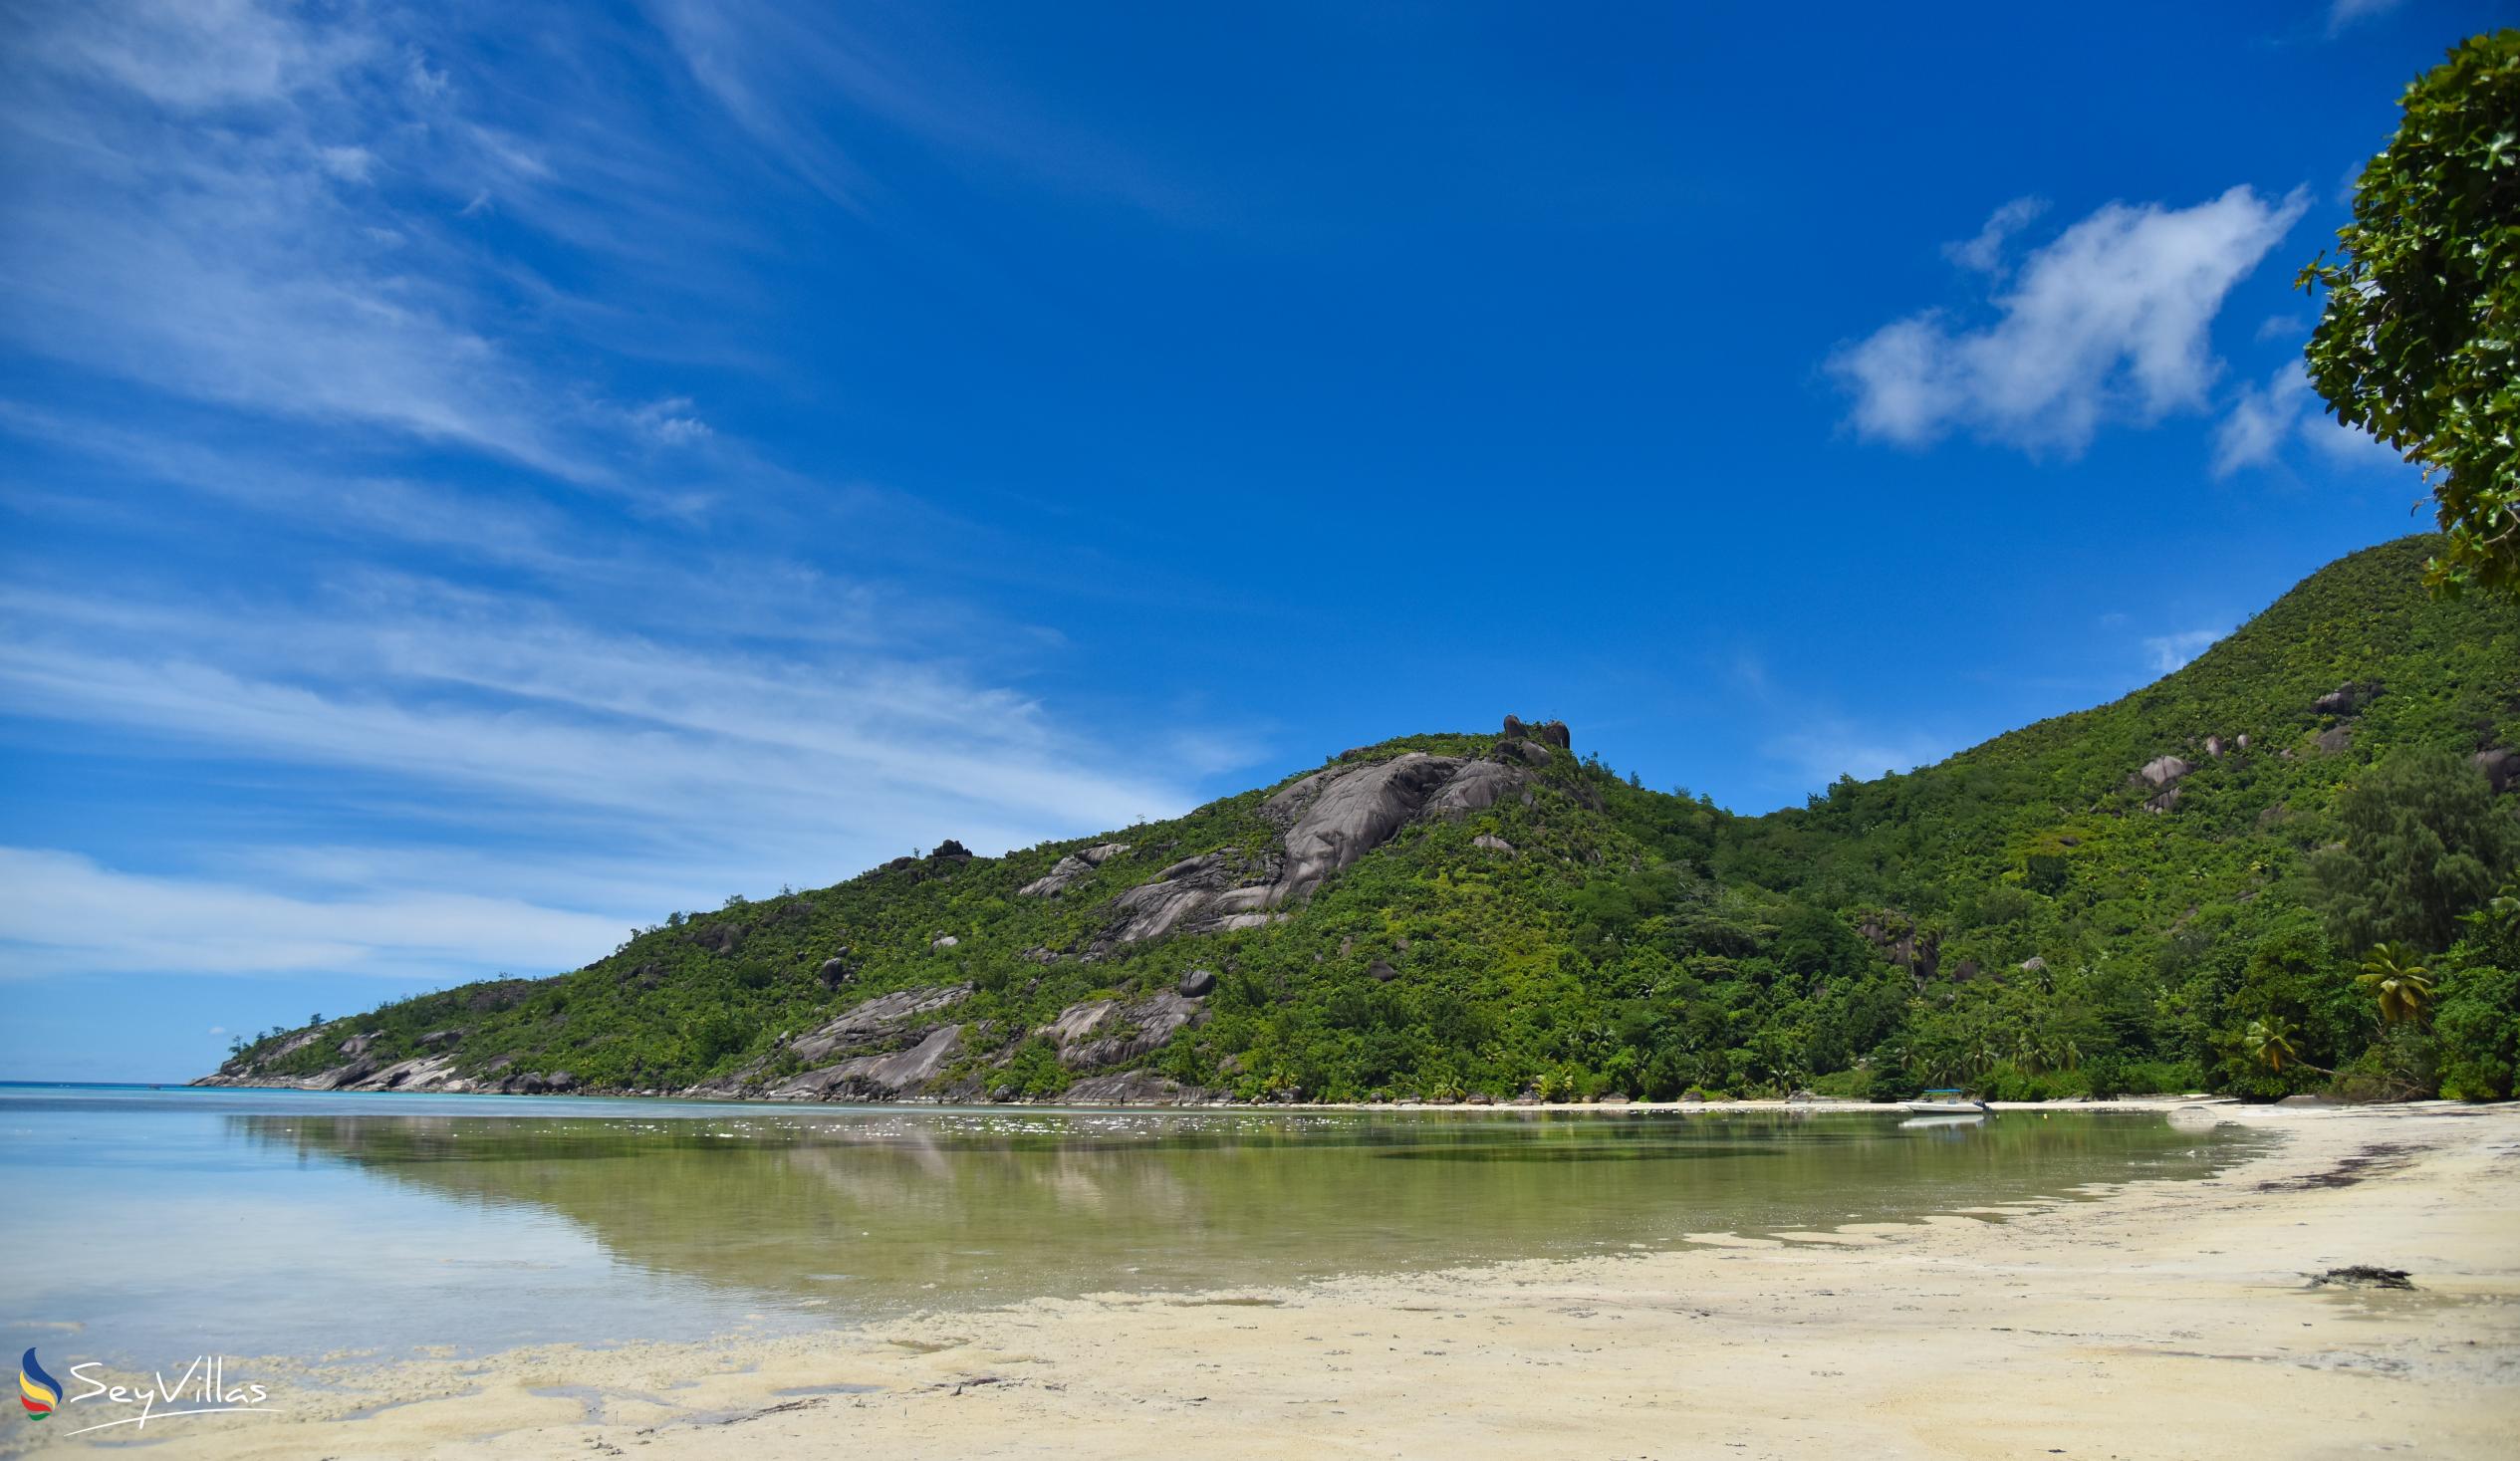 Photo 14: Baie Ternay - Mahé (Seychelles)